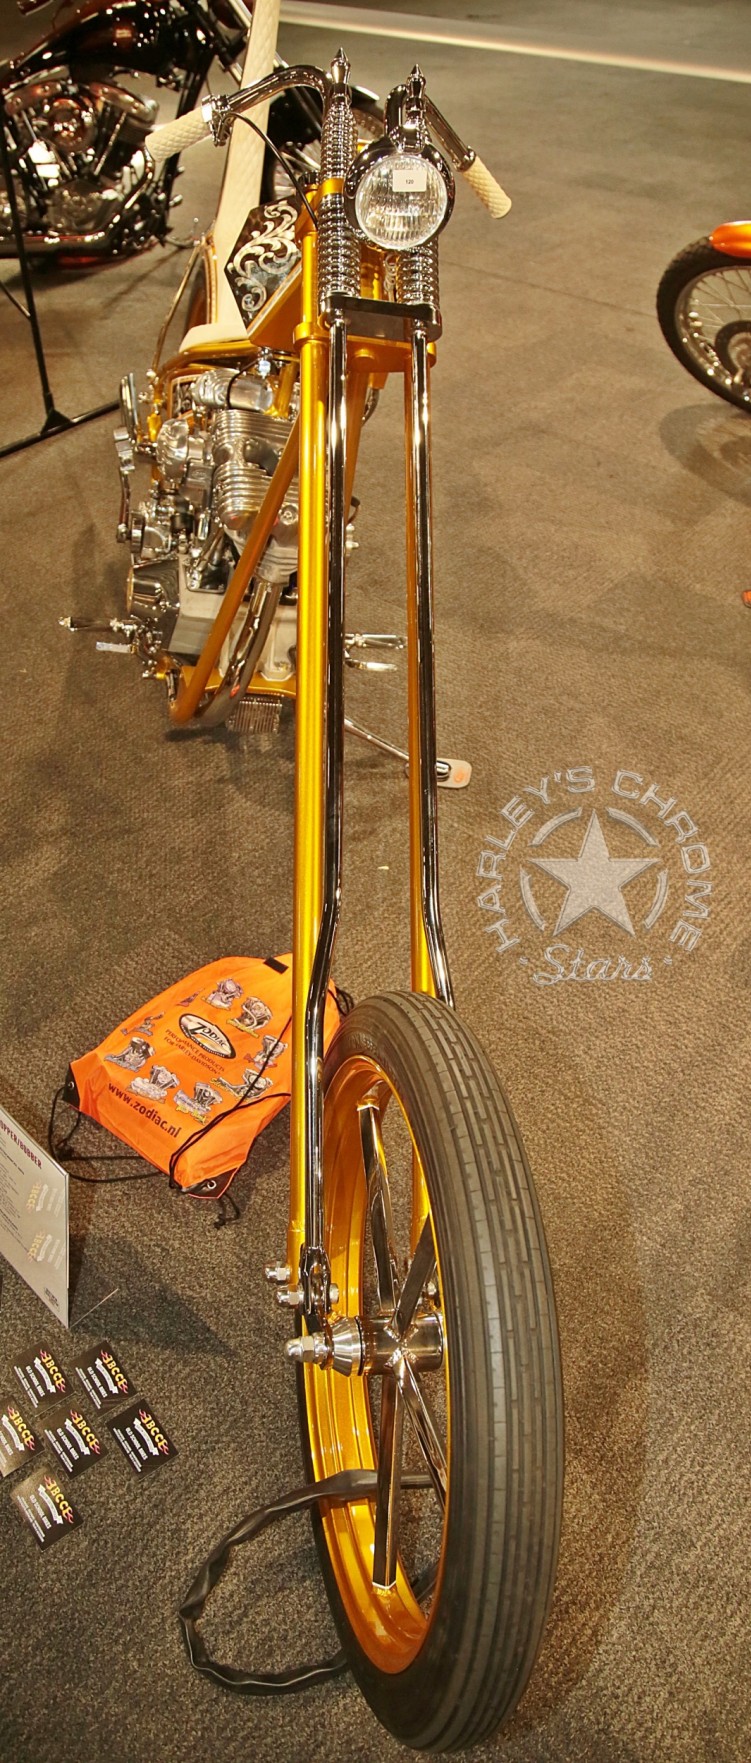 132 Big Twin Bikeshow Expo 22 Houten wystawa motocykli custom